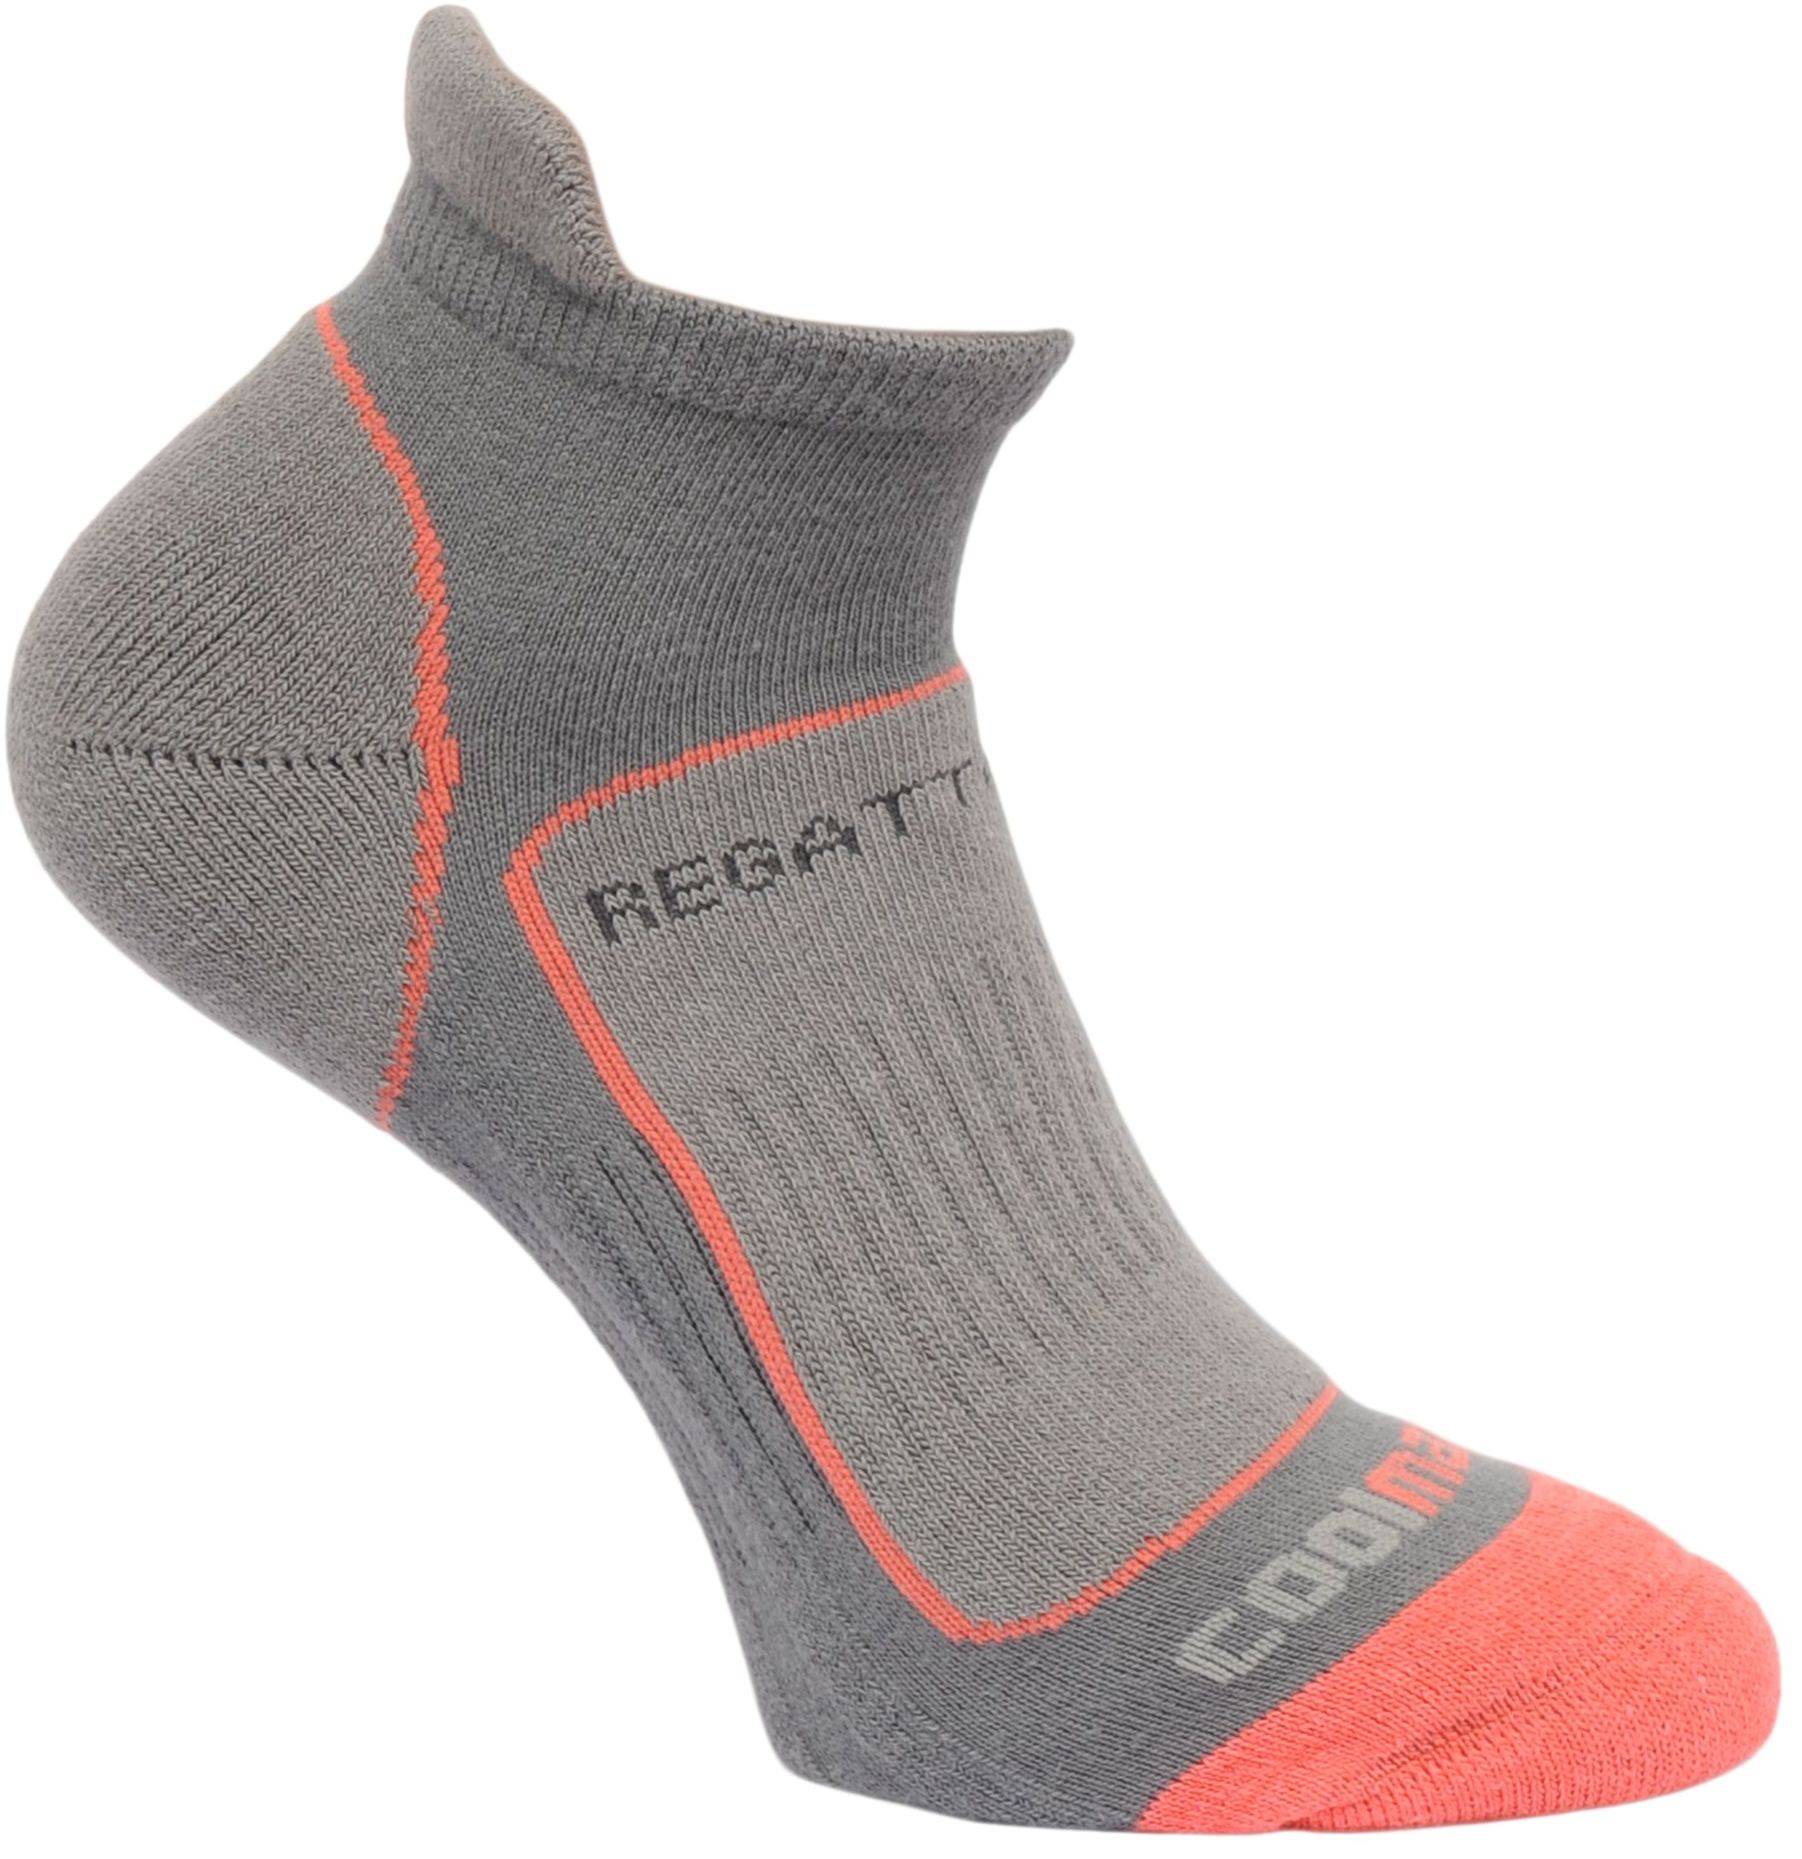 Regatta Wmns Trail Runner Socks Steel/Coral Size 6-8